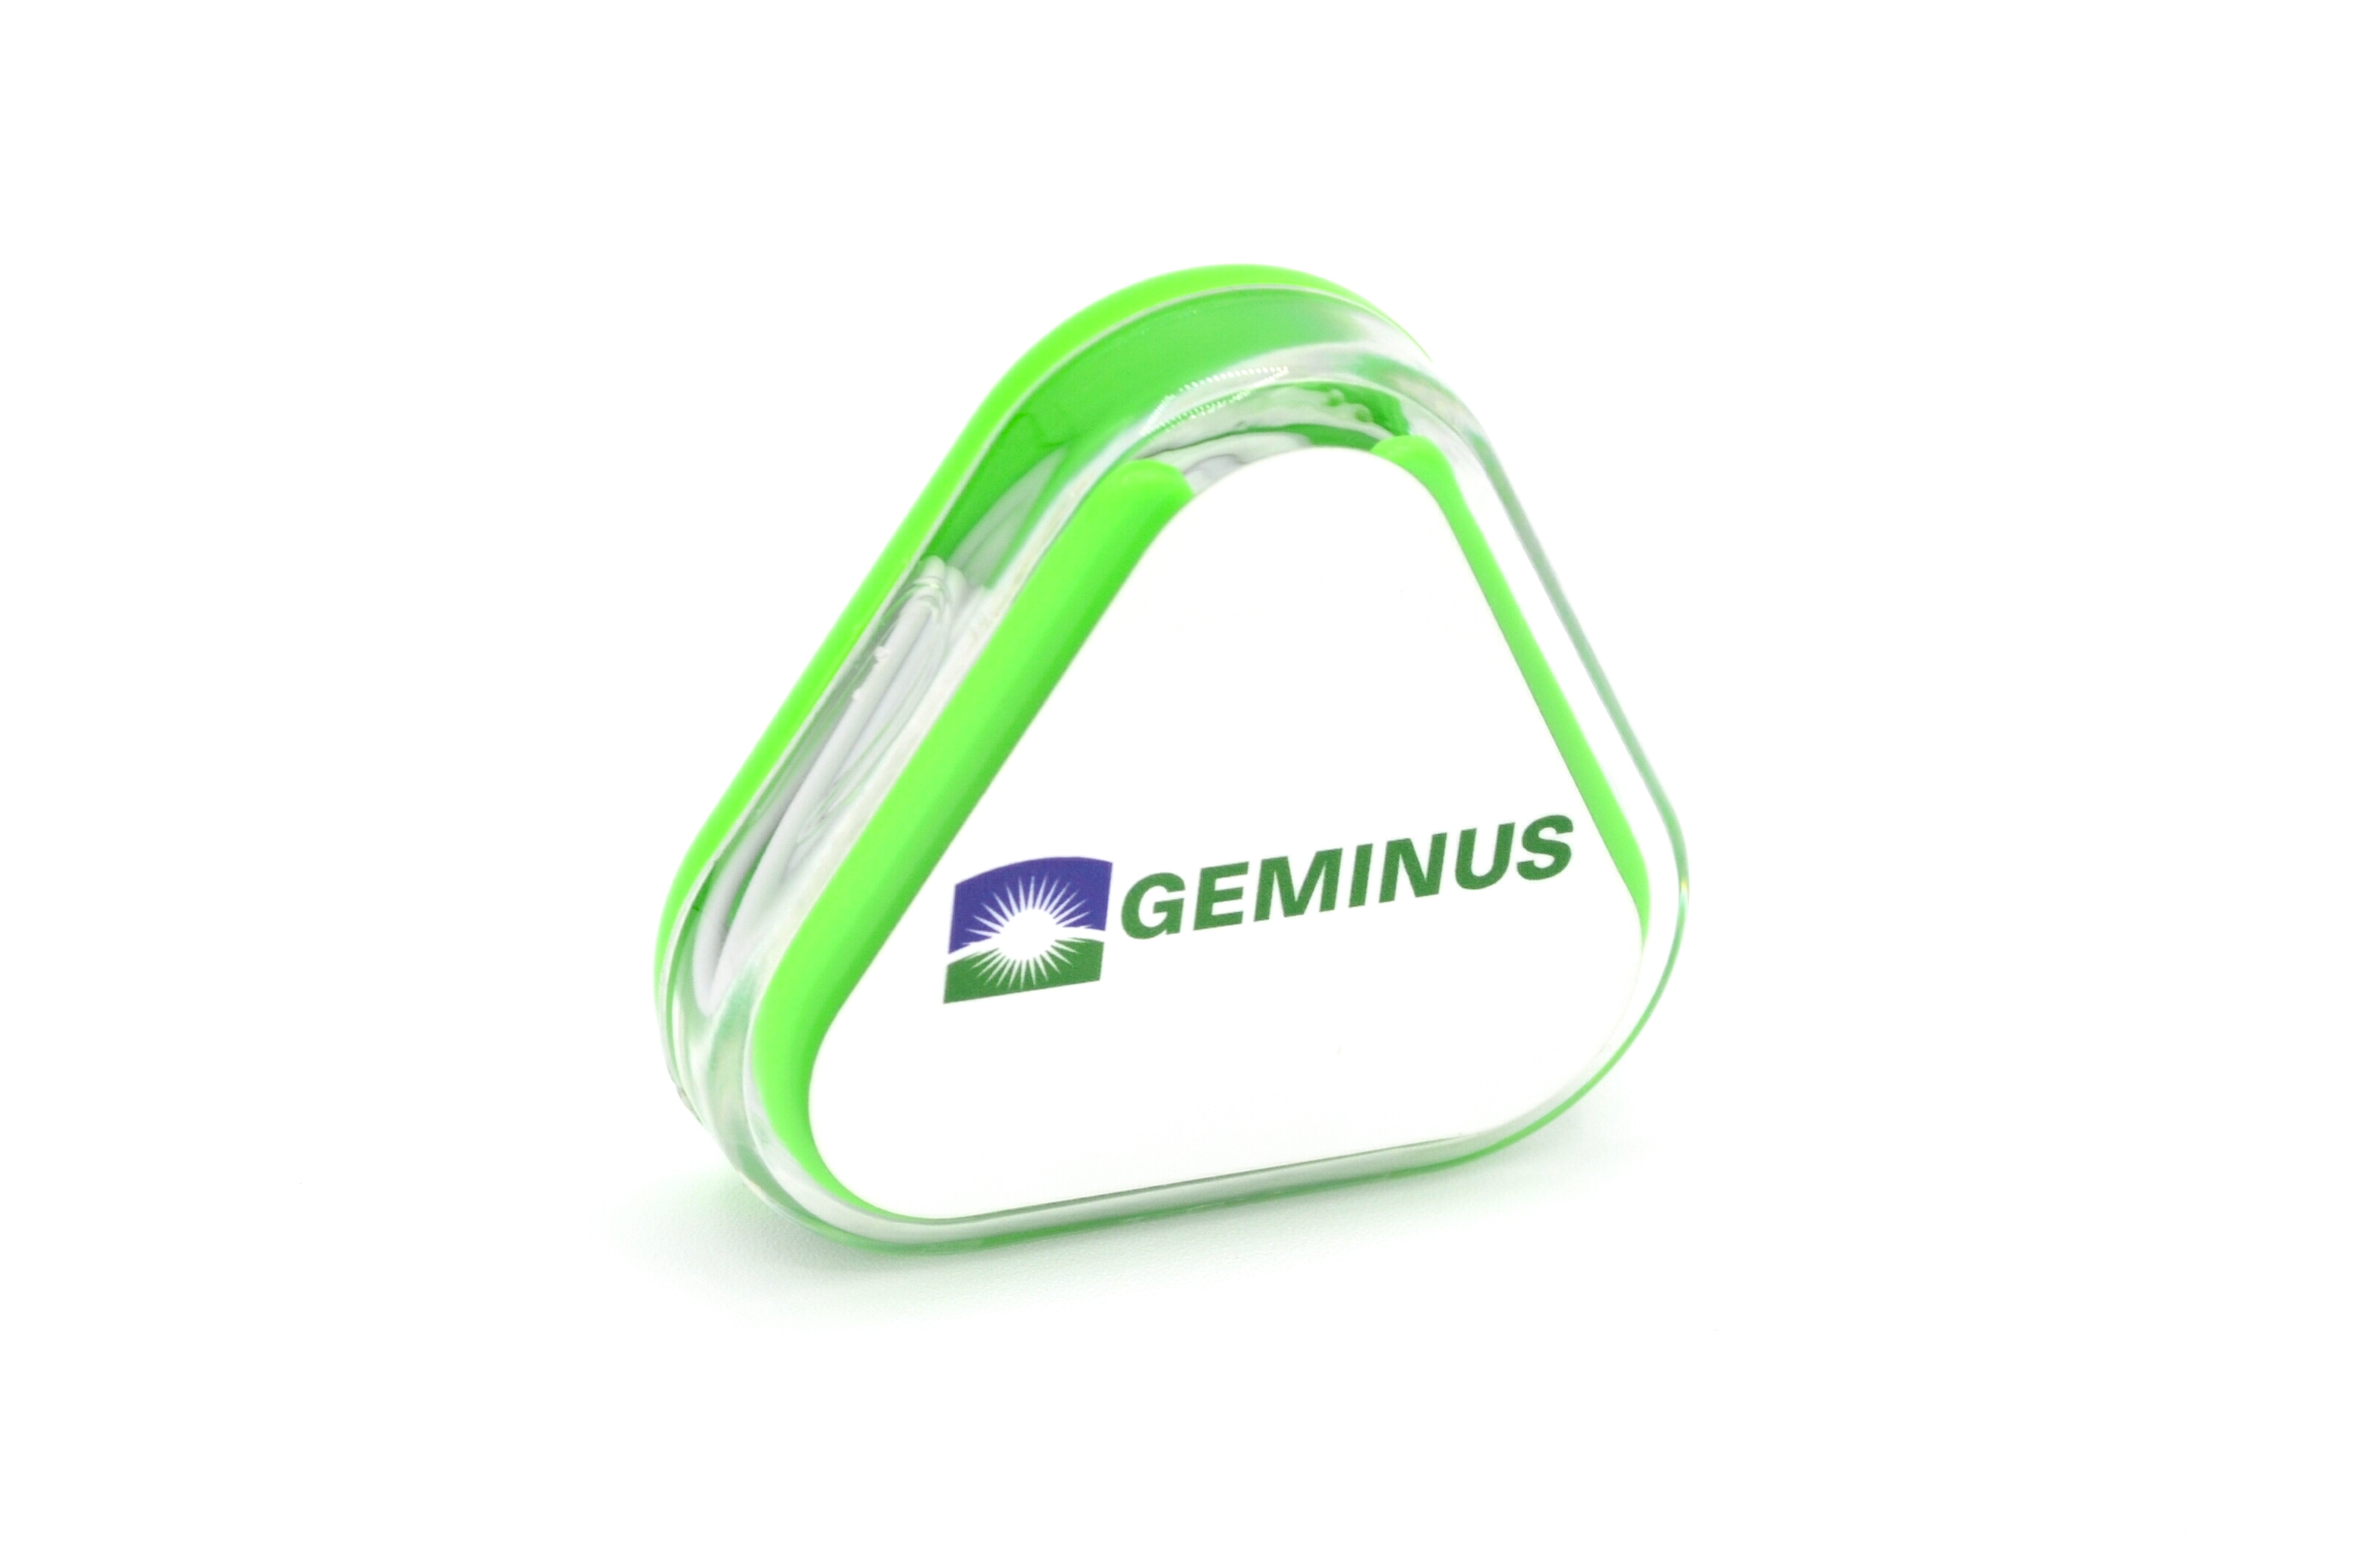  Geminus Headphones and Case